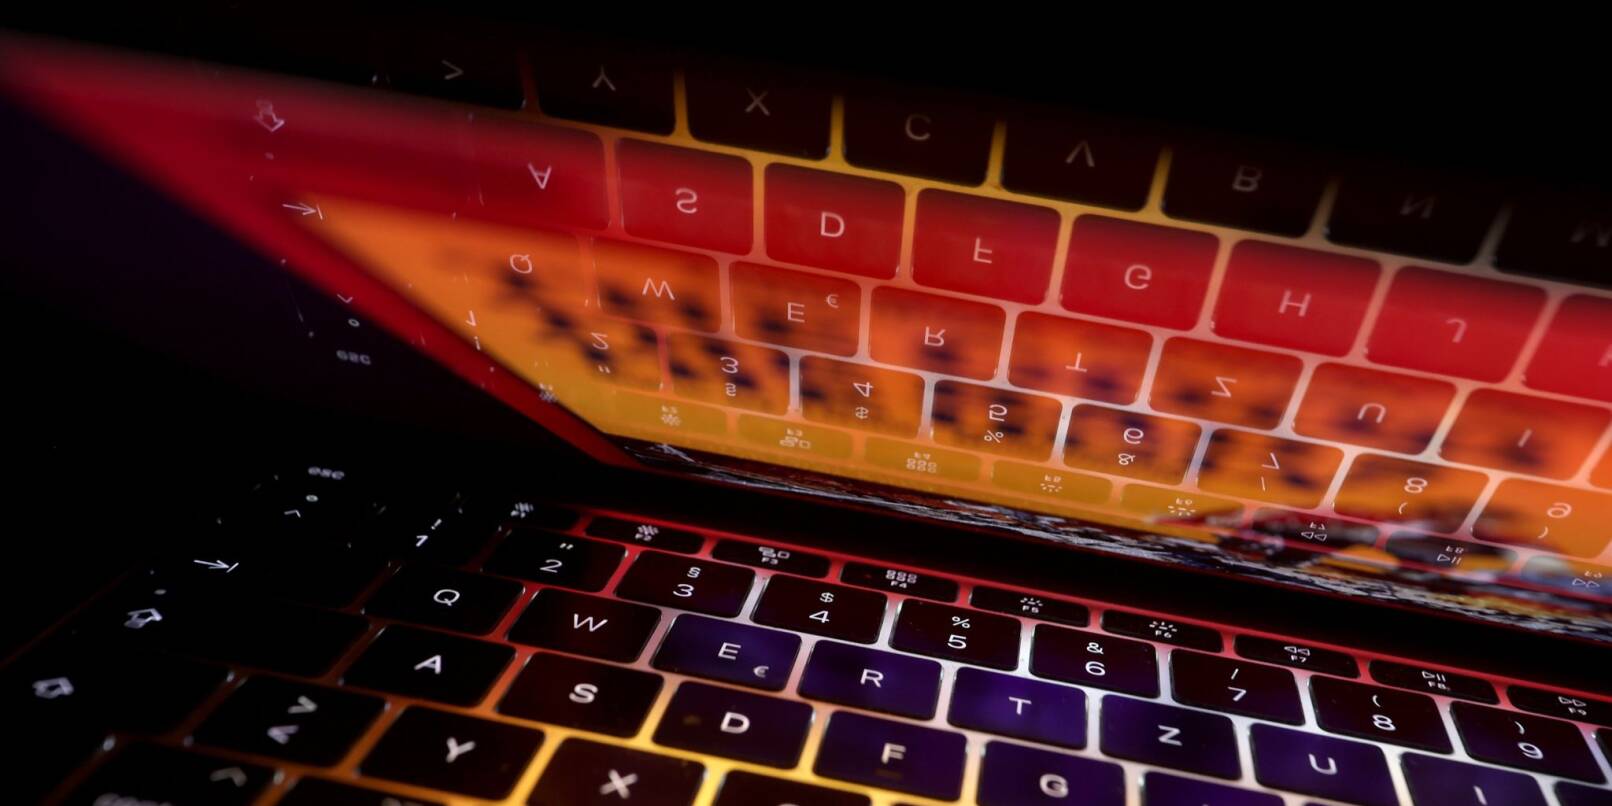 Die Tastatur eines Laptops spiegelt sich im Bildschirm: Nach jahrelangen Ermittlungen zu millionenschwerem Anlagebetrug im Internet ist Fahndern ein großer Schlag gelungen.